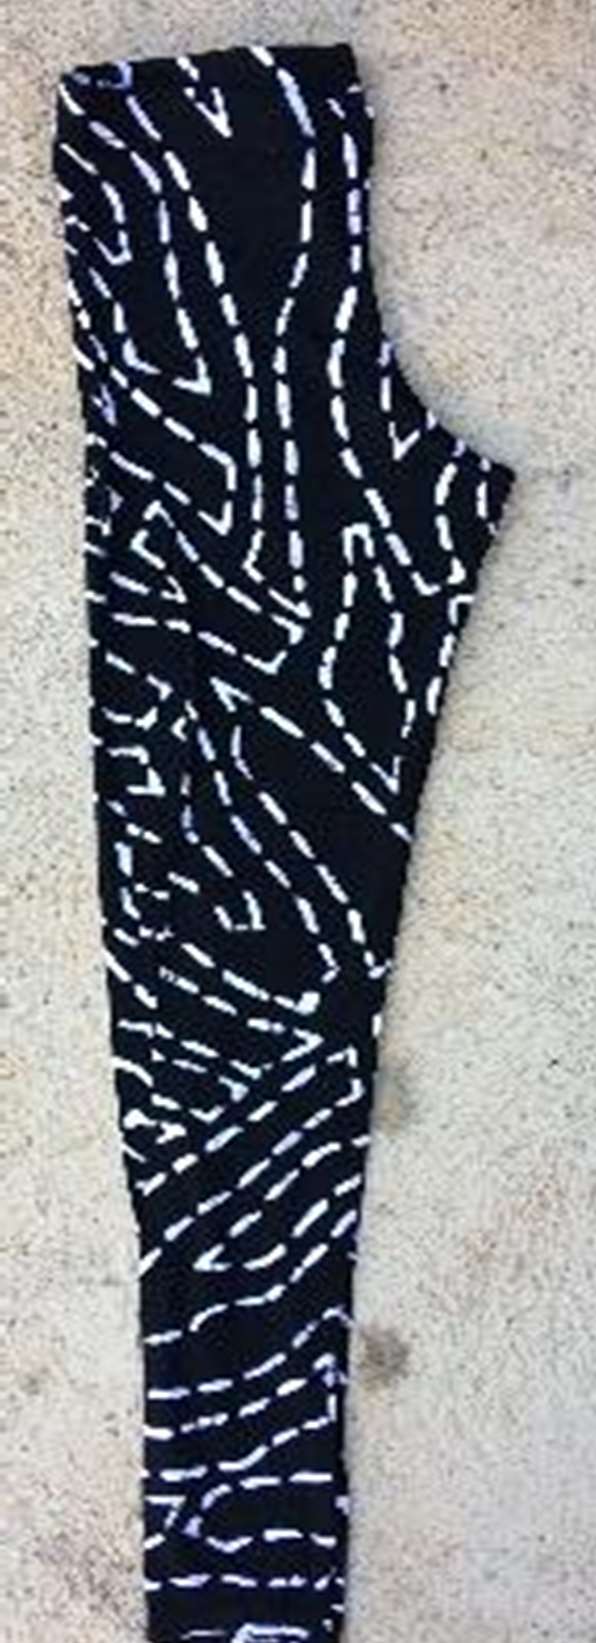 Handicraft Soul Women's Leggings - Black & White Zebra Lines